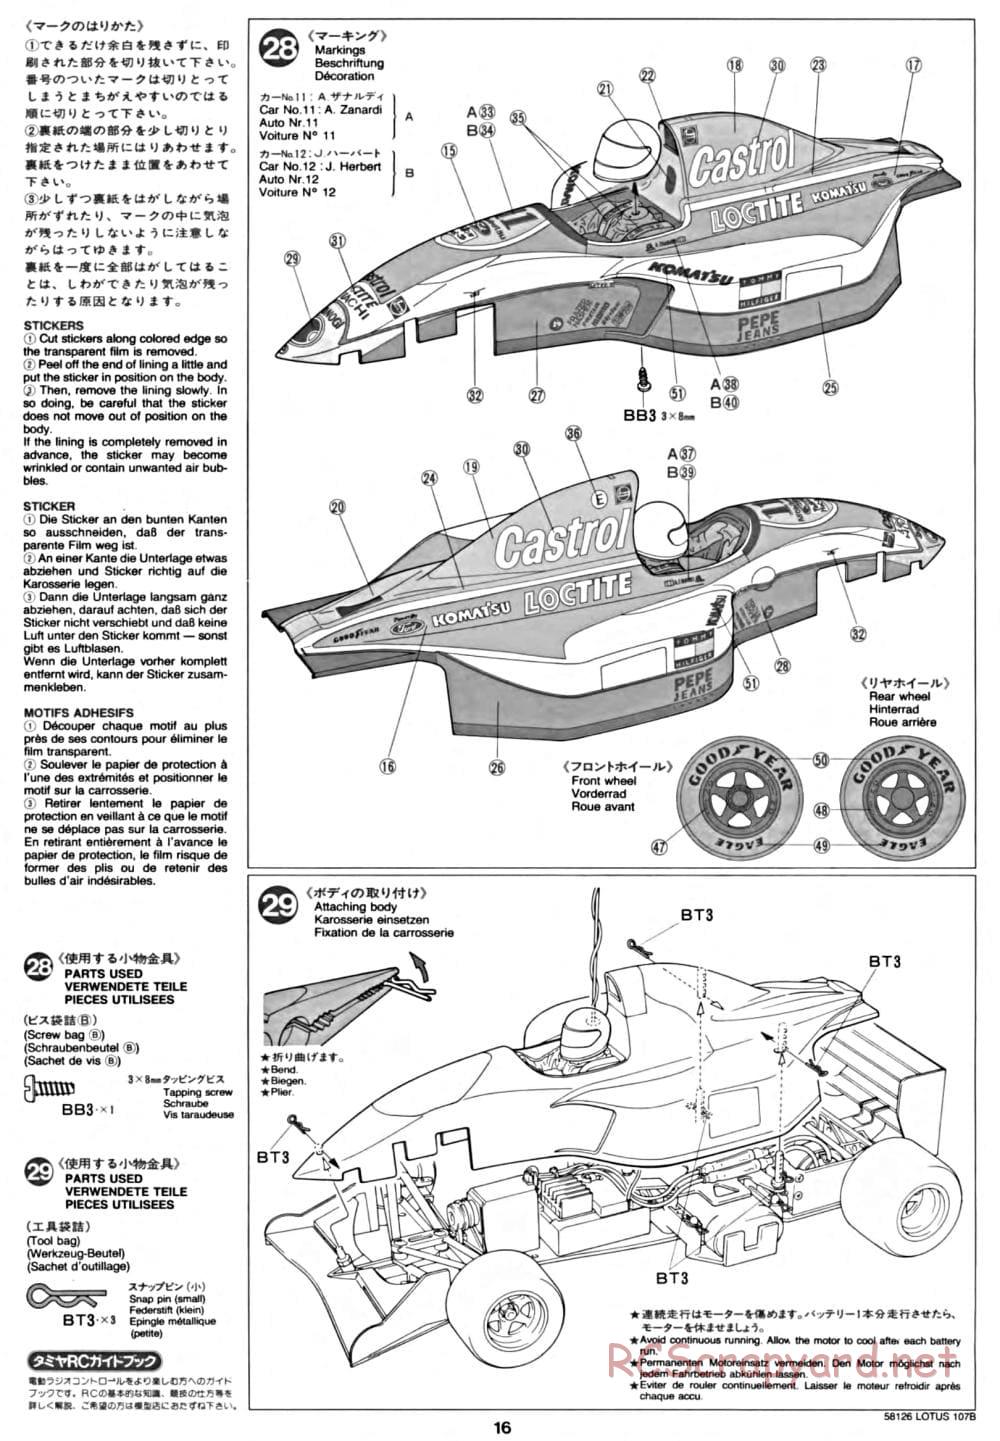 Tamiya - Lotus 107B Ford - F103 Chassis - Manual - Page 16